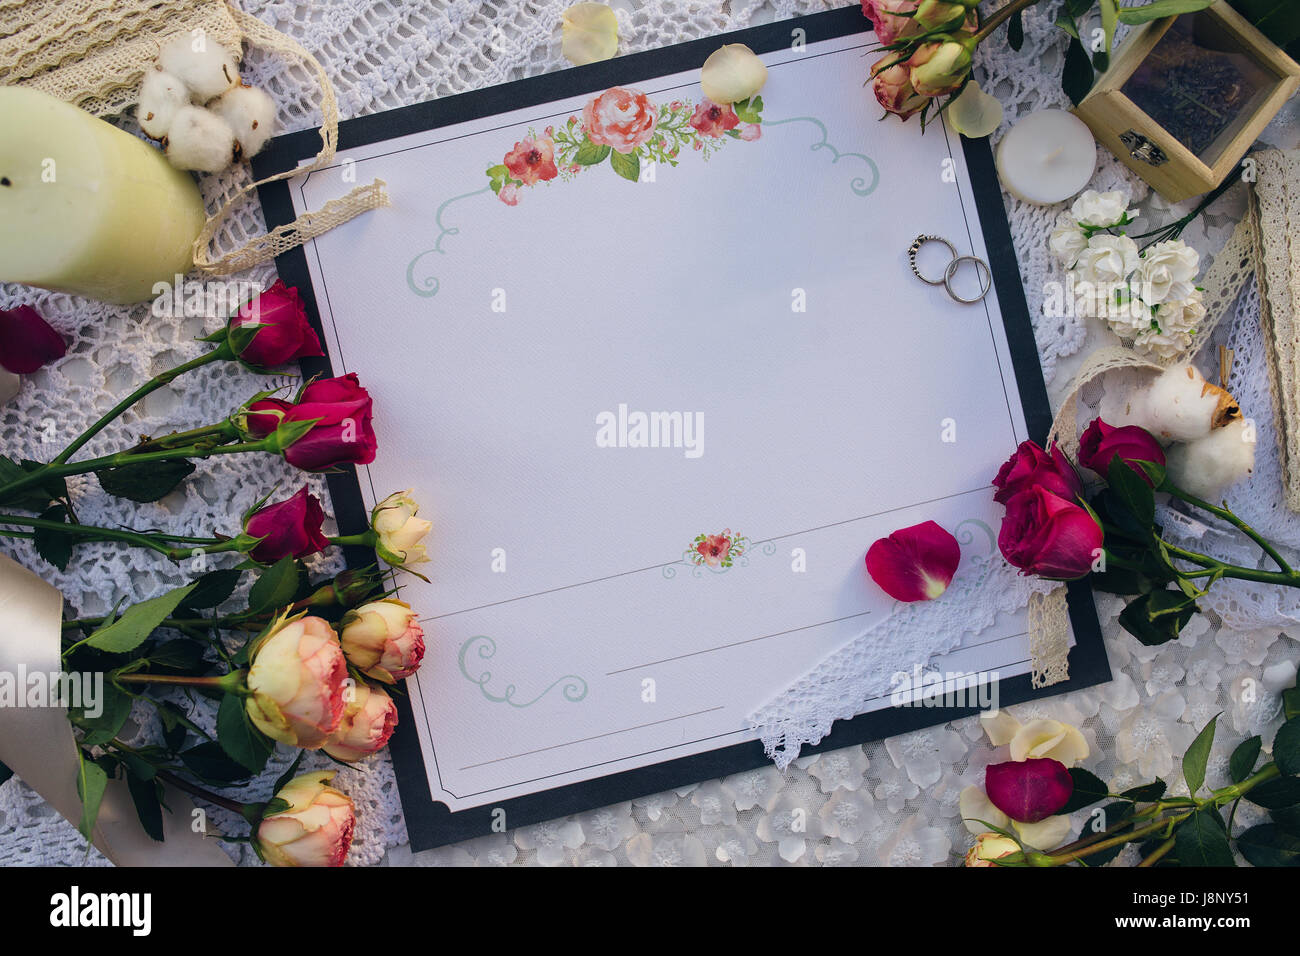 Invitation de mariage, bagues, roses et bougie sur une serviette blanche, vue du dessus Banque D'Images